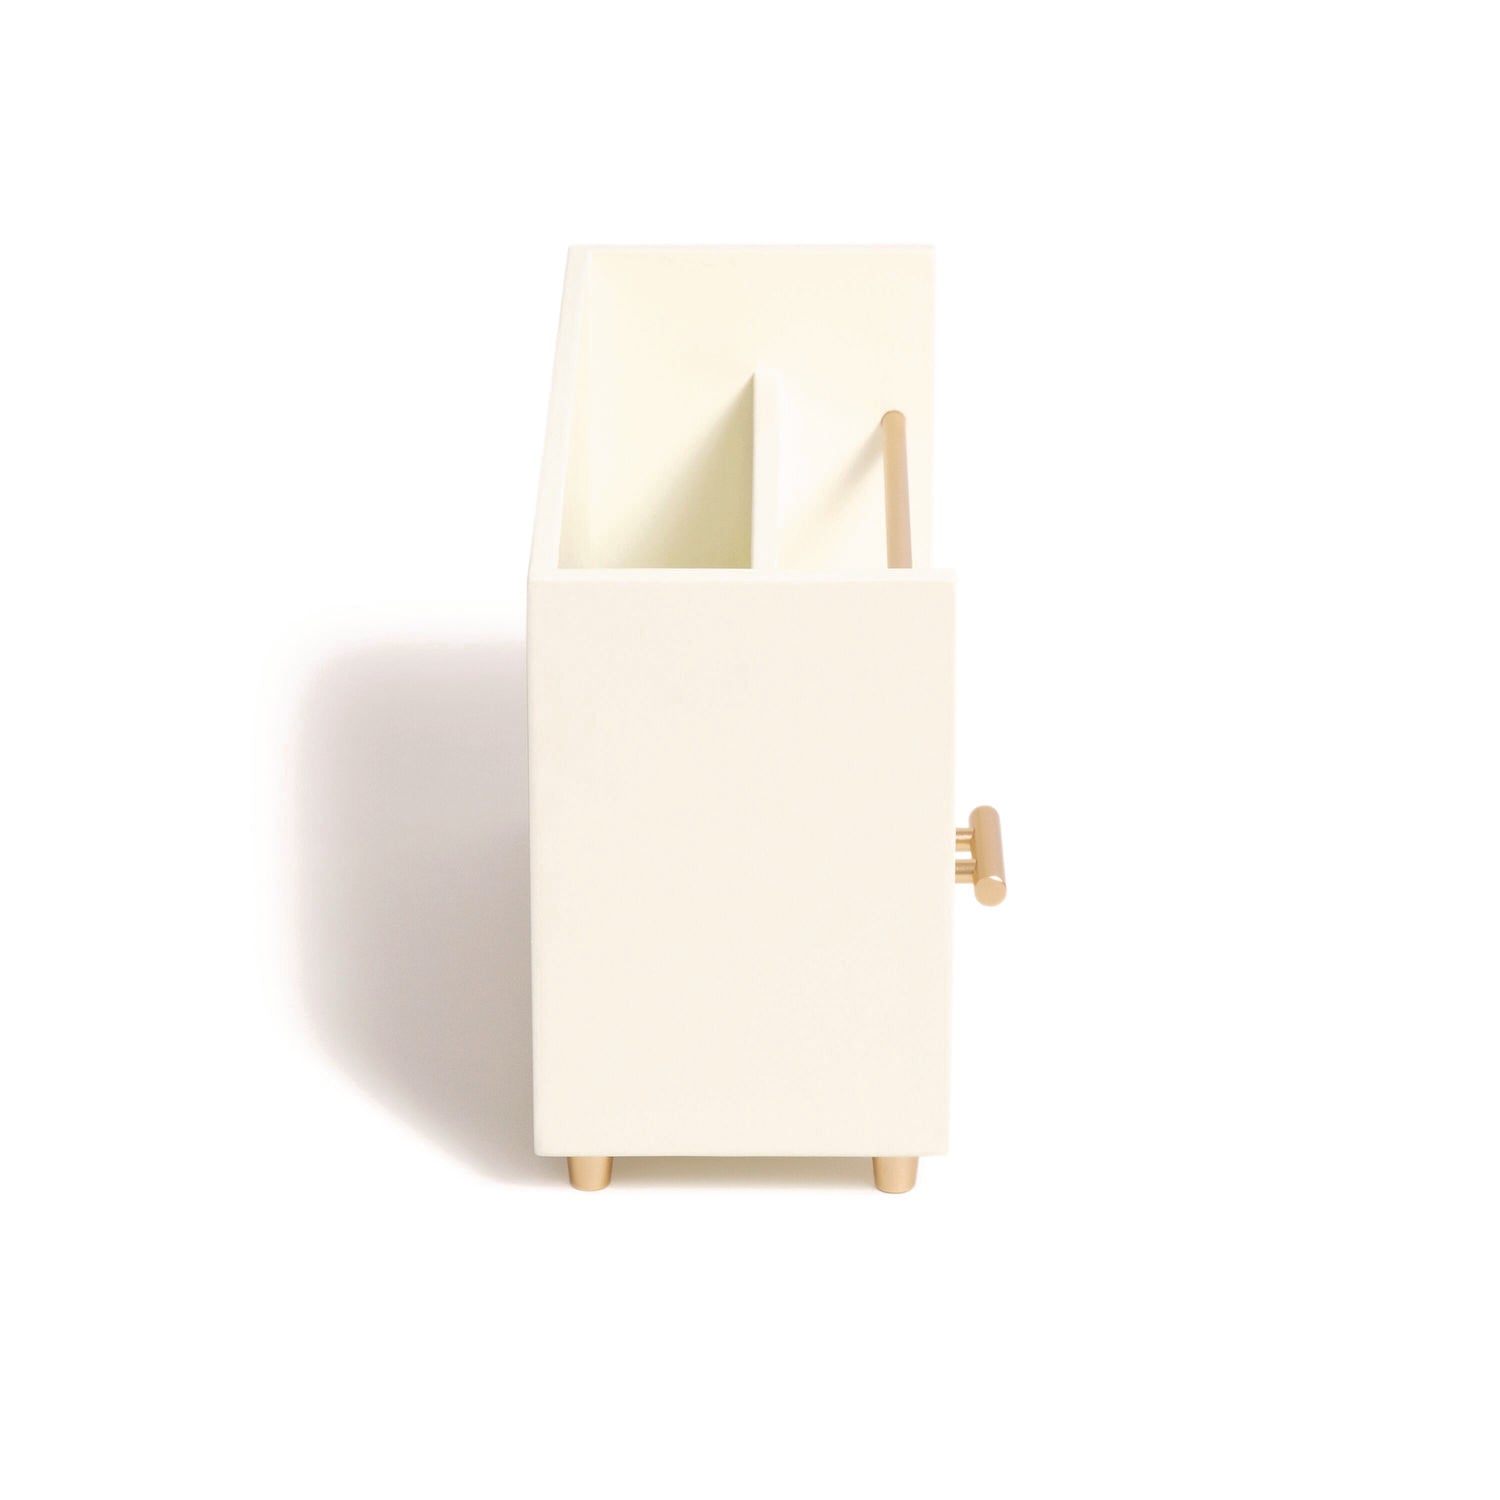 juliet-desk-organizer-3-compartments-1-drawer-95-x-42-x-49-white-gold-wood-metal_ubr3464u0312 - 3